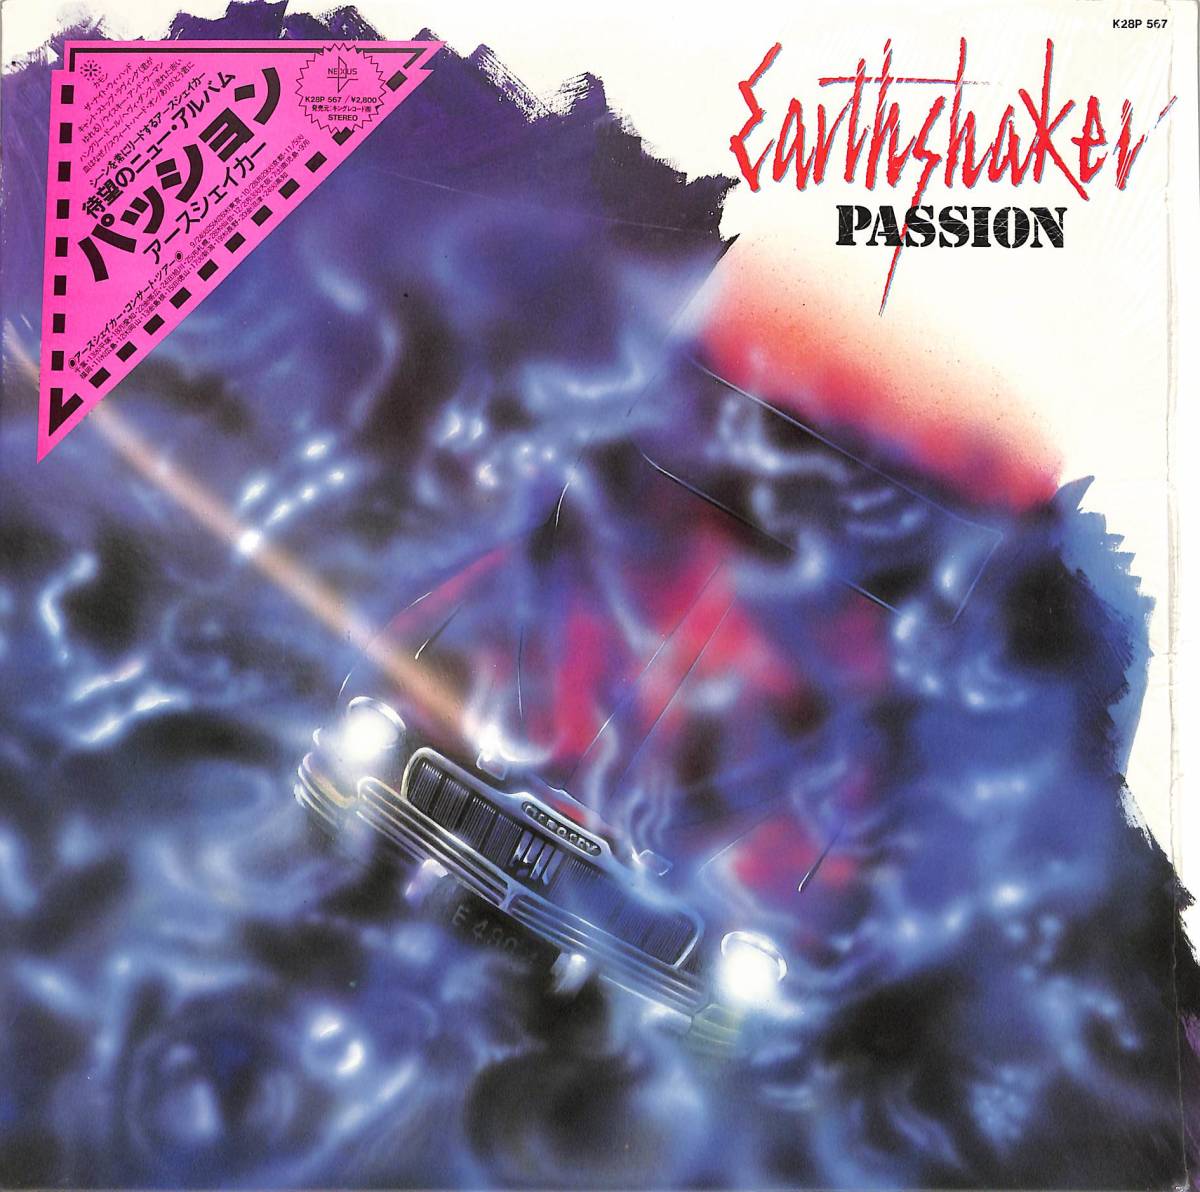 A00559054/A00559054/LP/EARTHSHAKER(アースシェイカー)「Passion (1985年・K28P-567・へヴィメタル)」_画像1